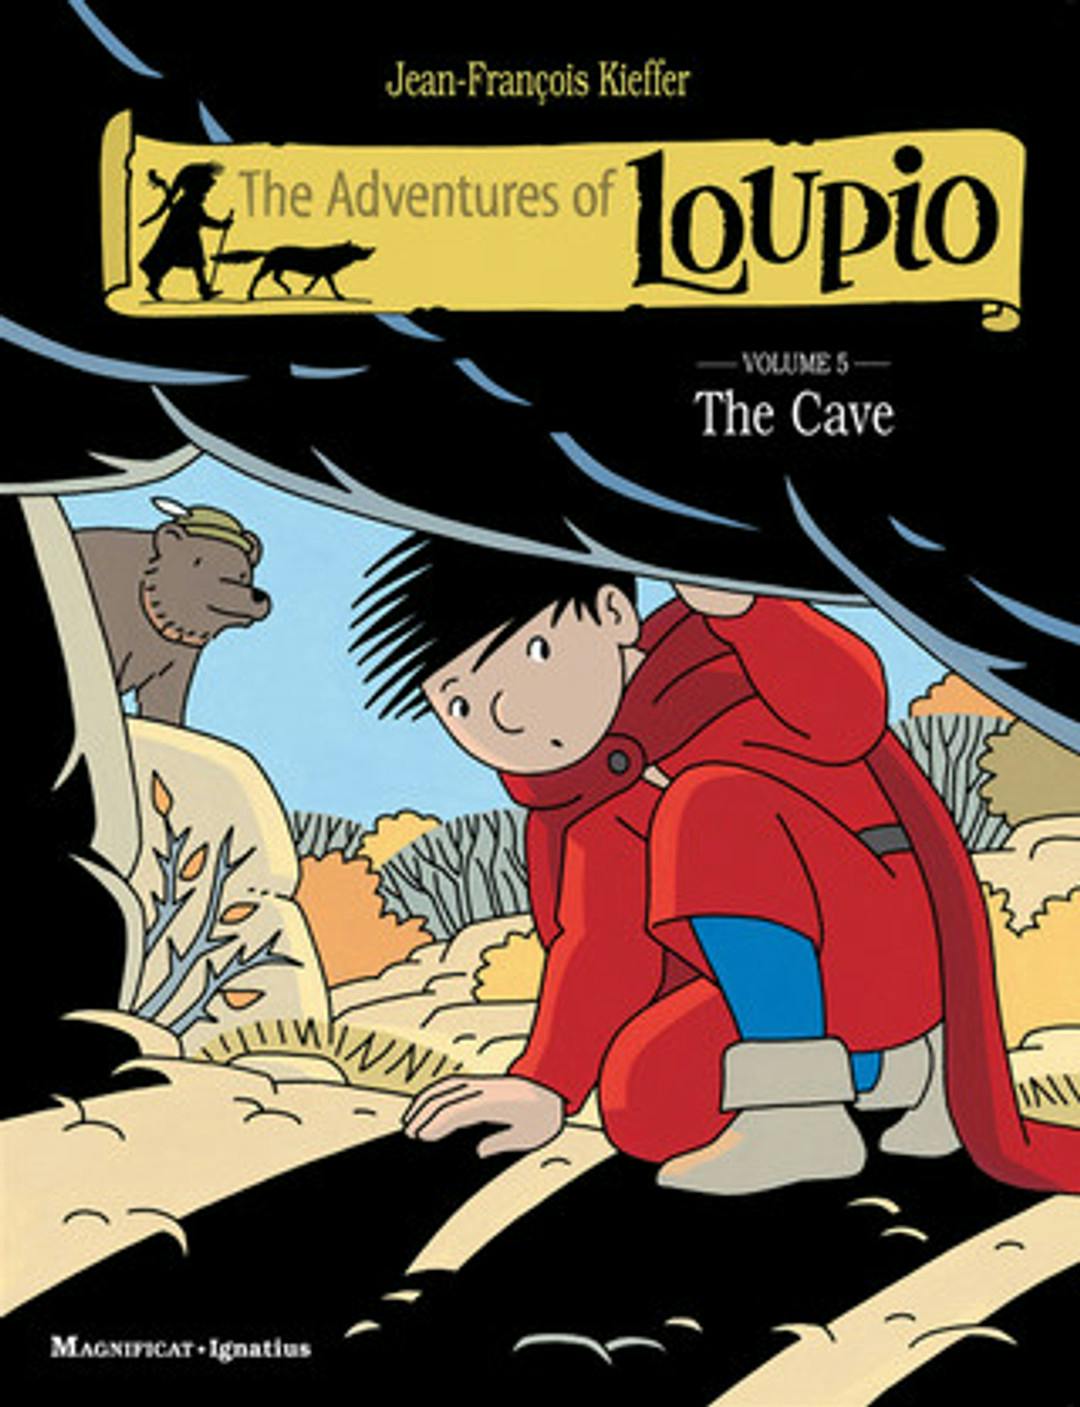 The Adventures of Loupio Volume 5